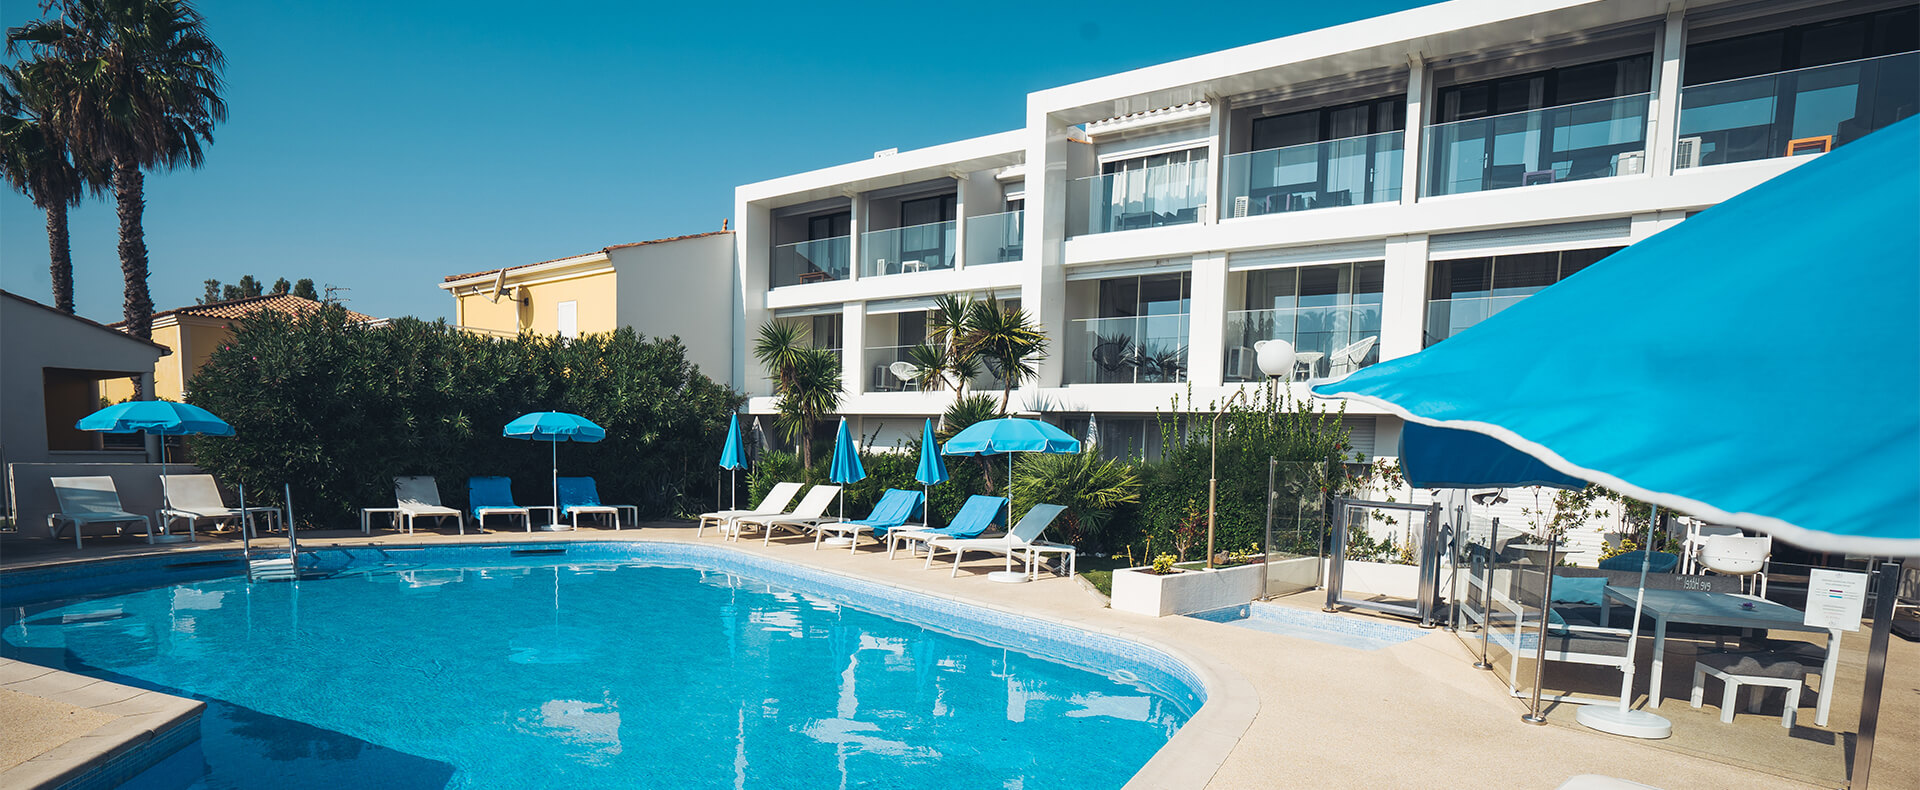 Schwimmbad Hotel Eve, Hotel am Cap d 'Agde